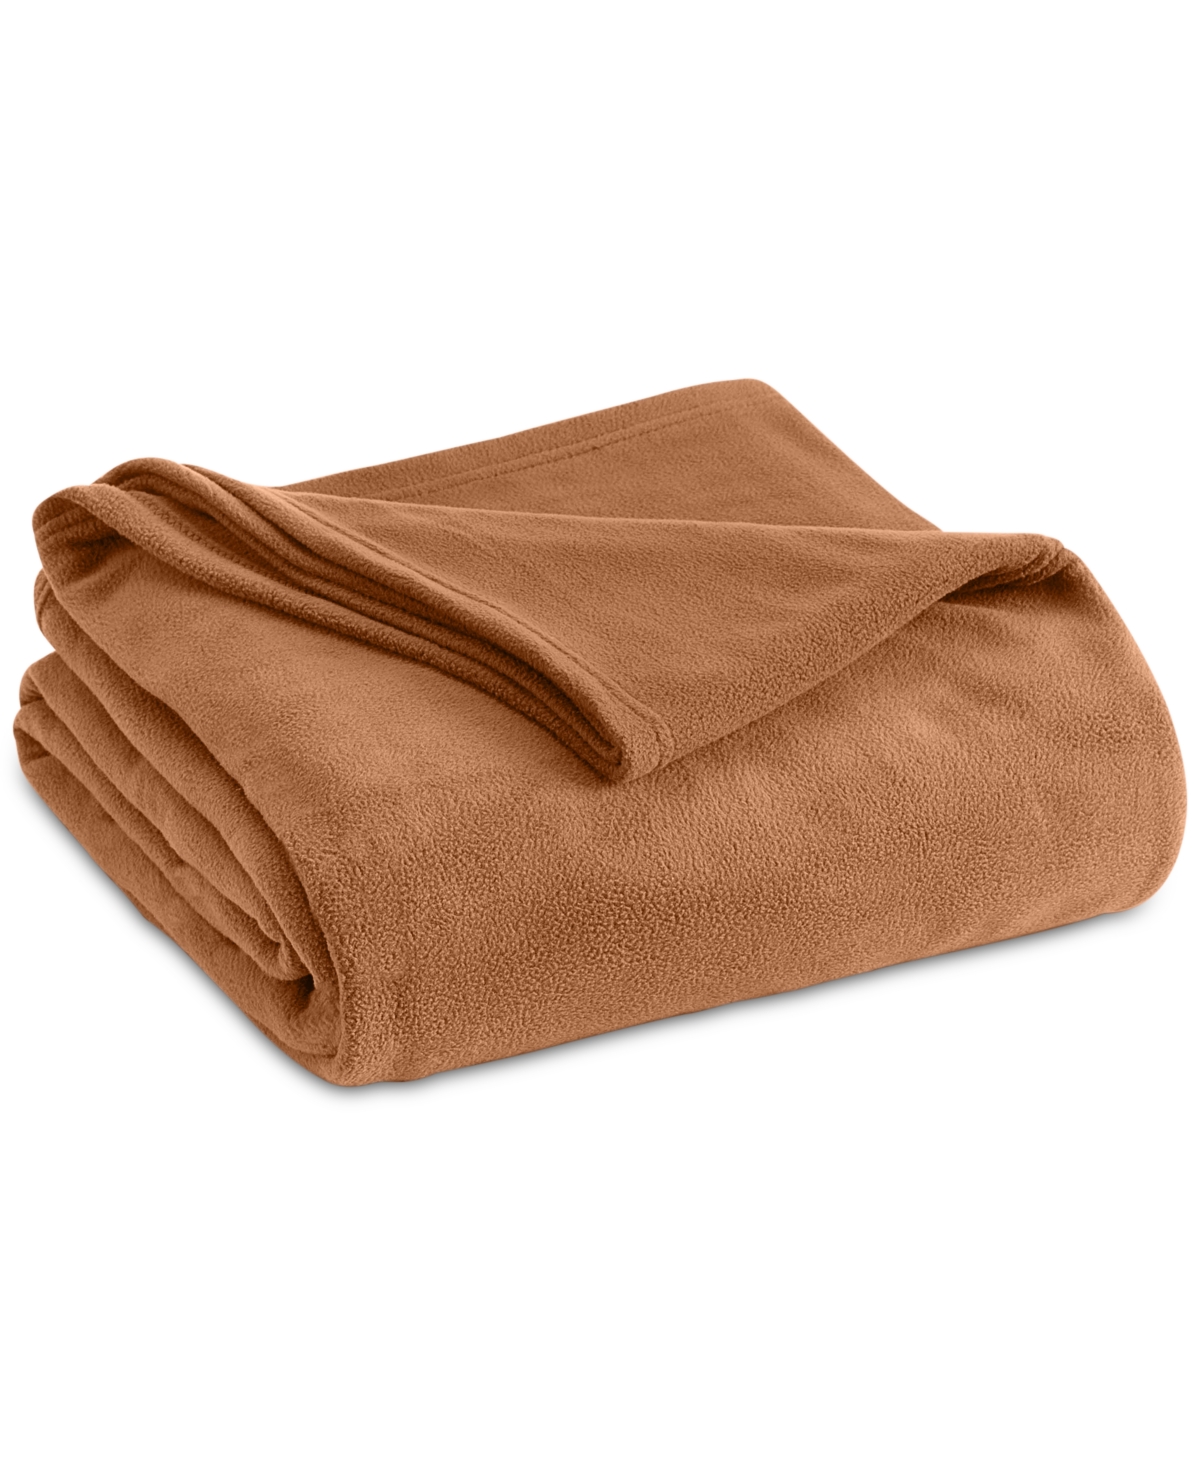 Vellux Brushed Microfleece Queen Blanket Bedding In Tobacco Brown